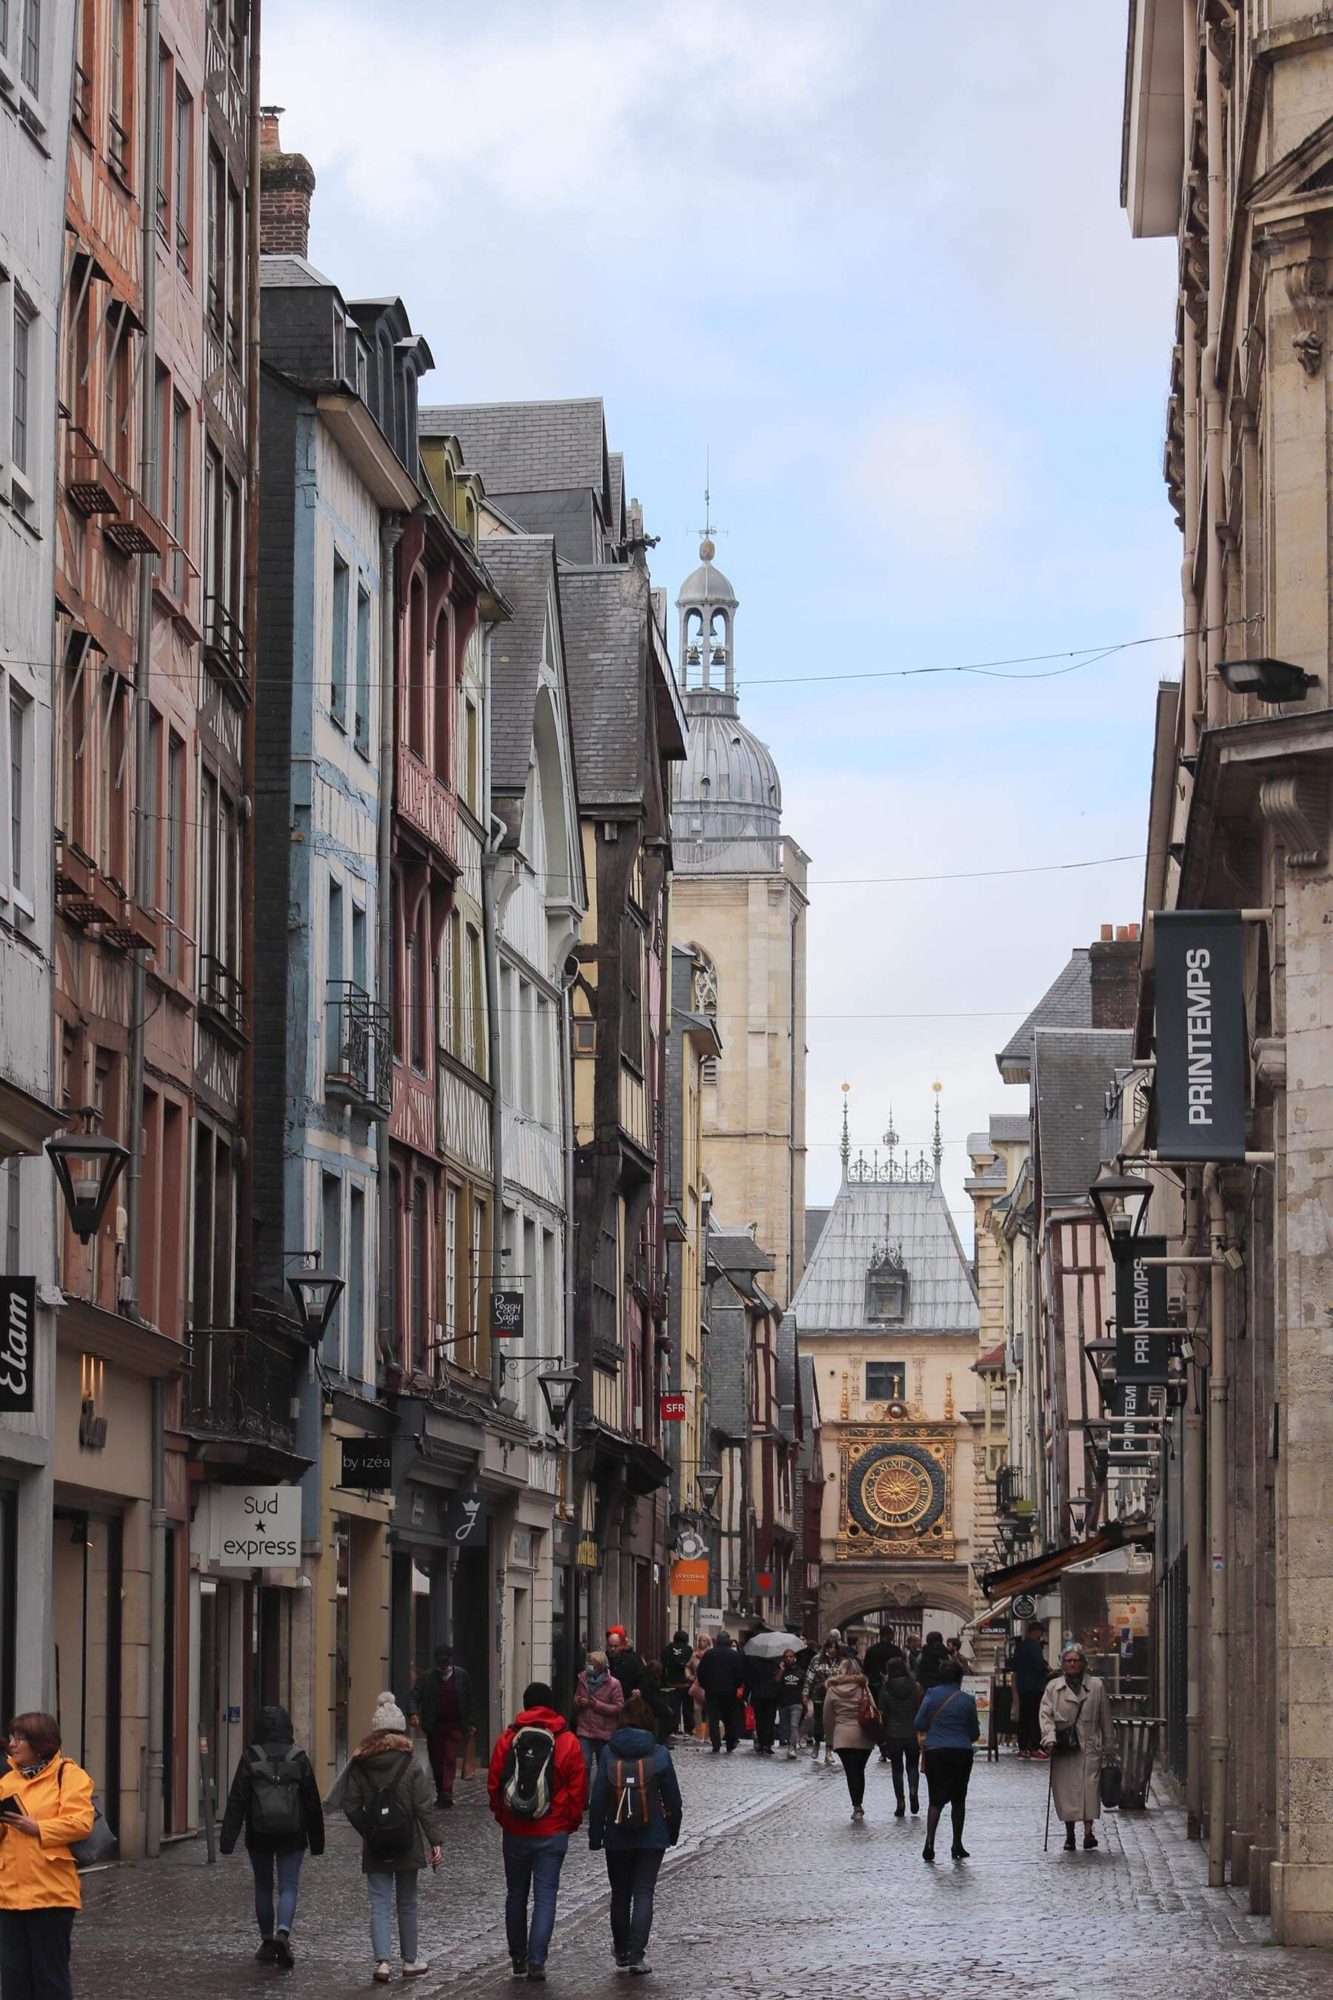 City of Rouen